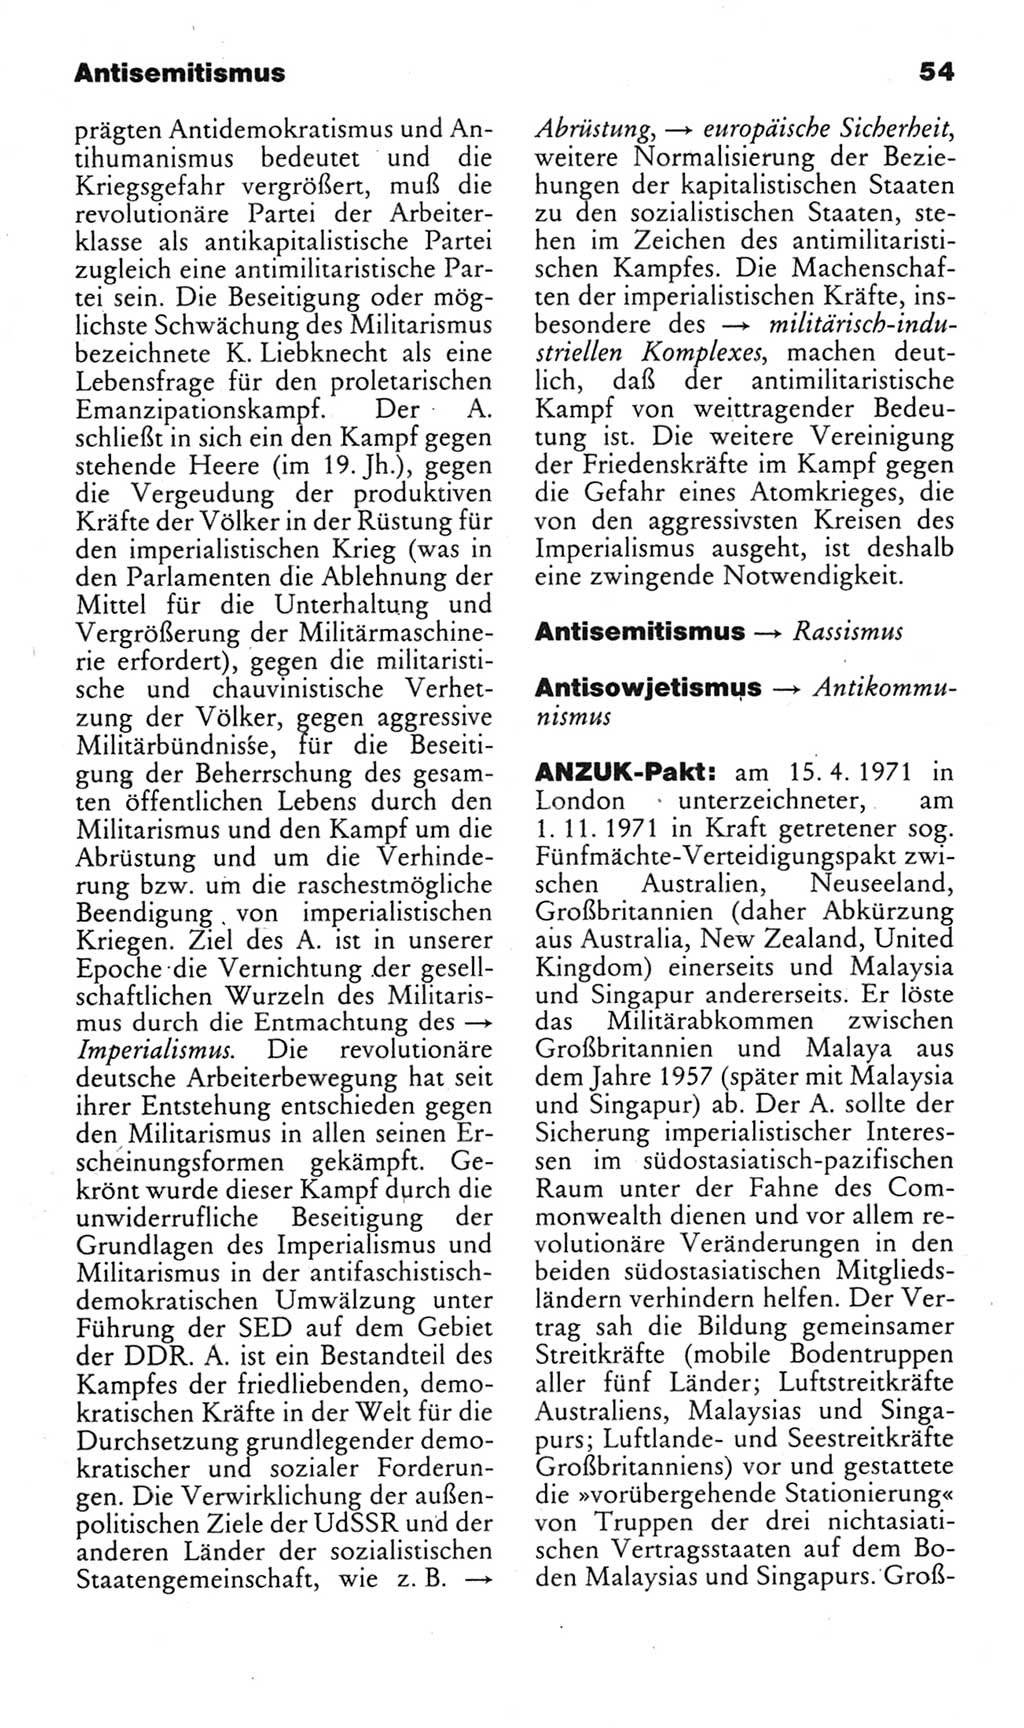 Kleines politisches Wörterbuch [Deutsche Demokratische Republik (DDR)] 1985, Seite 54 (Kl. pol. Wb. DDR 1985, S. 54)